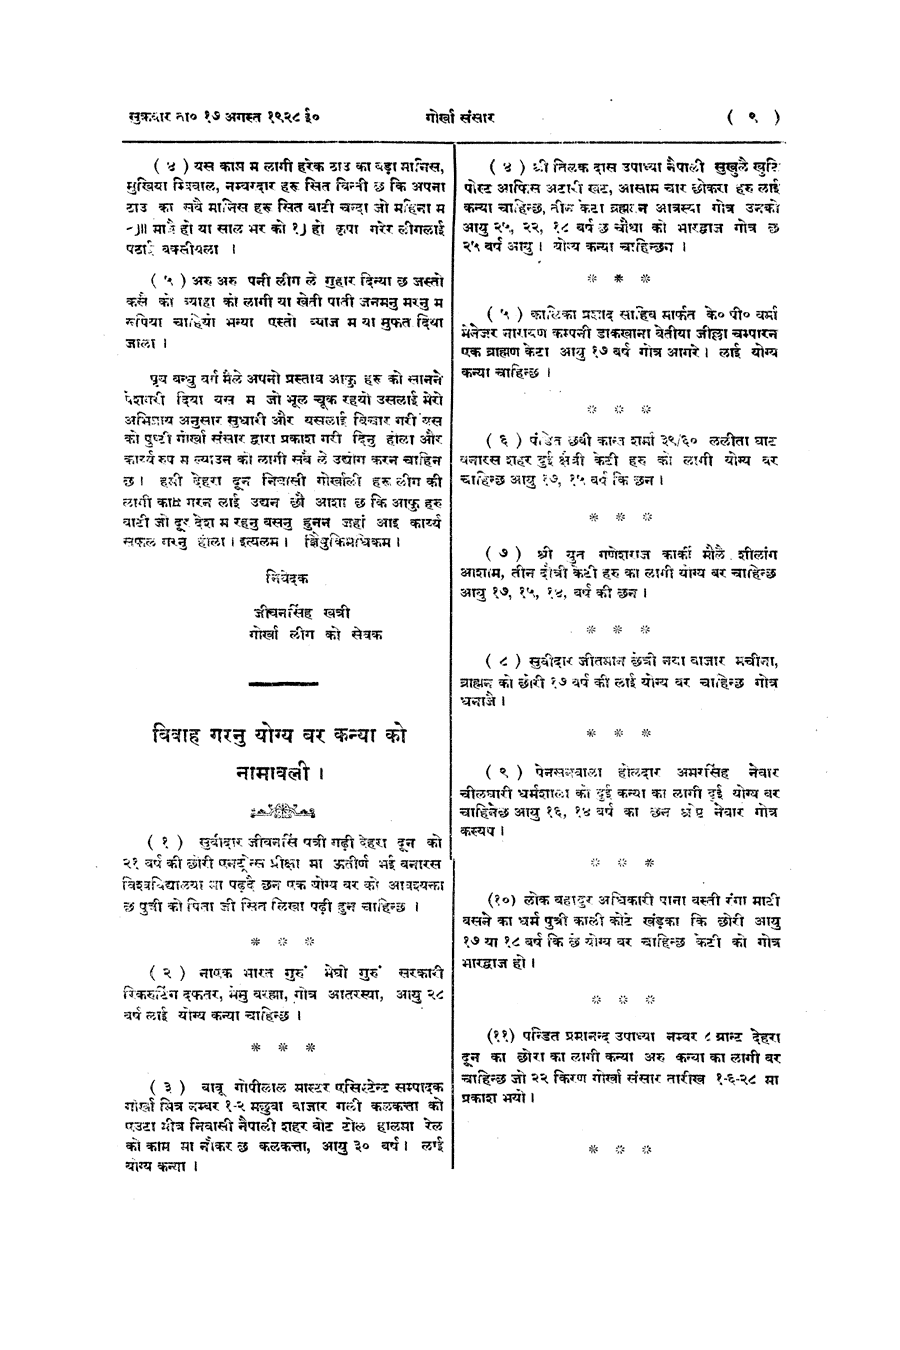 Gorkha Sansar, 17 Aug 1928, page 9